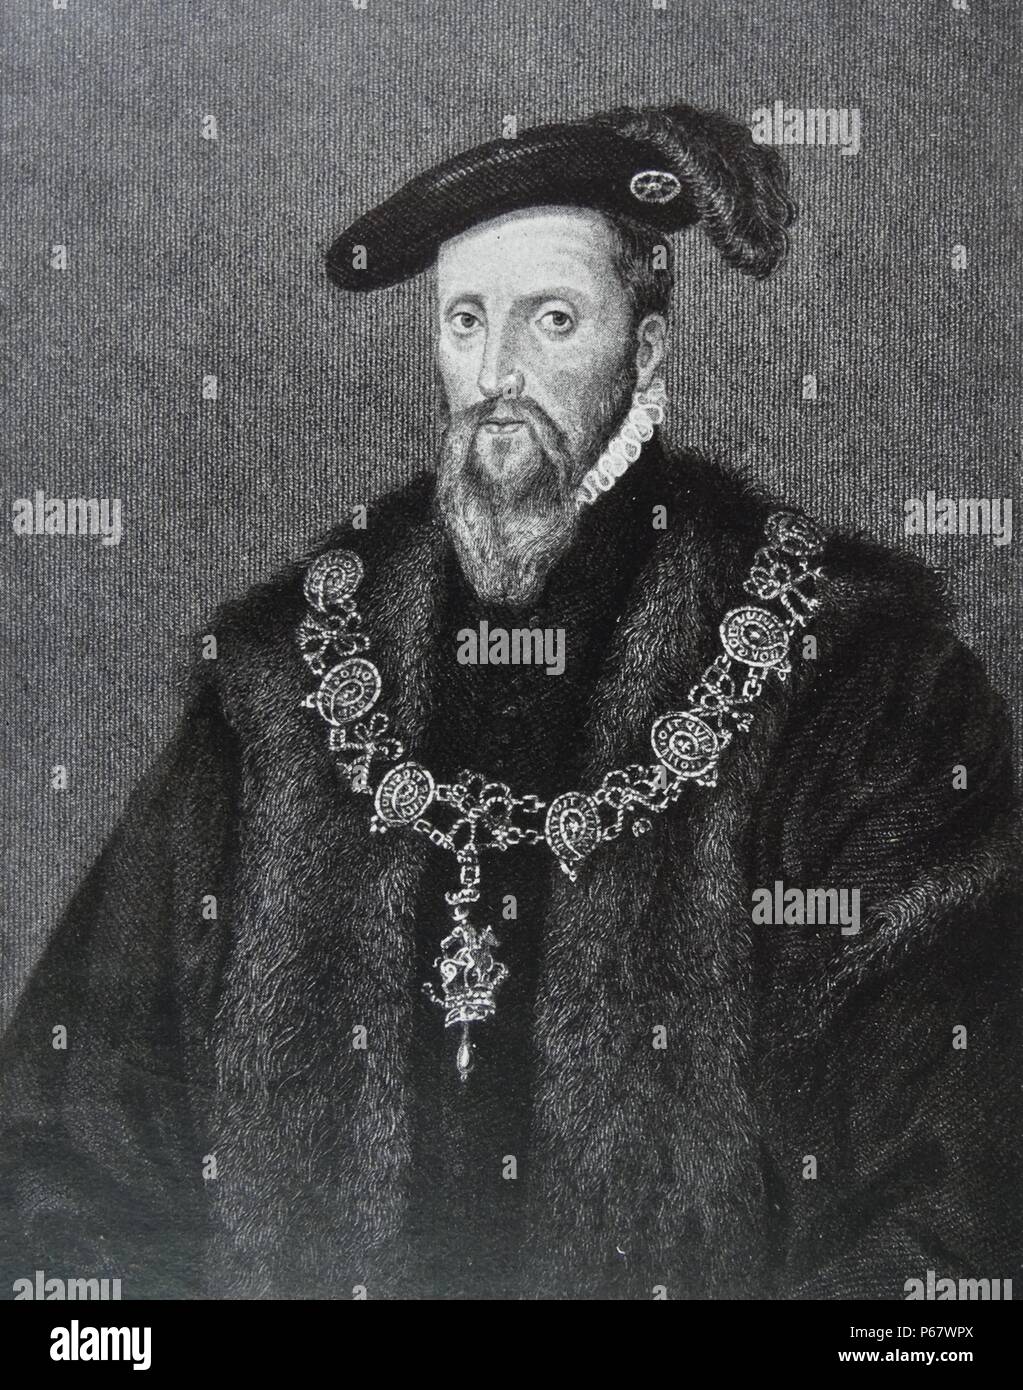 Edward Seymour, duc de Somerset, 1500 - 1552). Lord Protecteur d'Angleterre pendant la minorité de son neveu le roi Édouard VI Banque D'Images